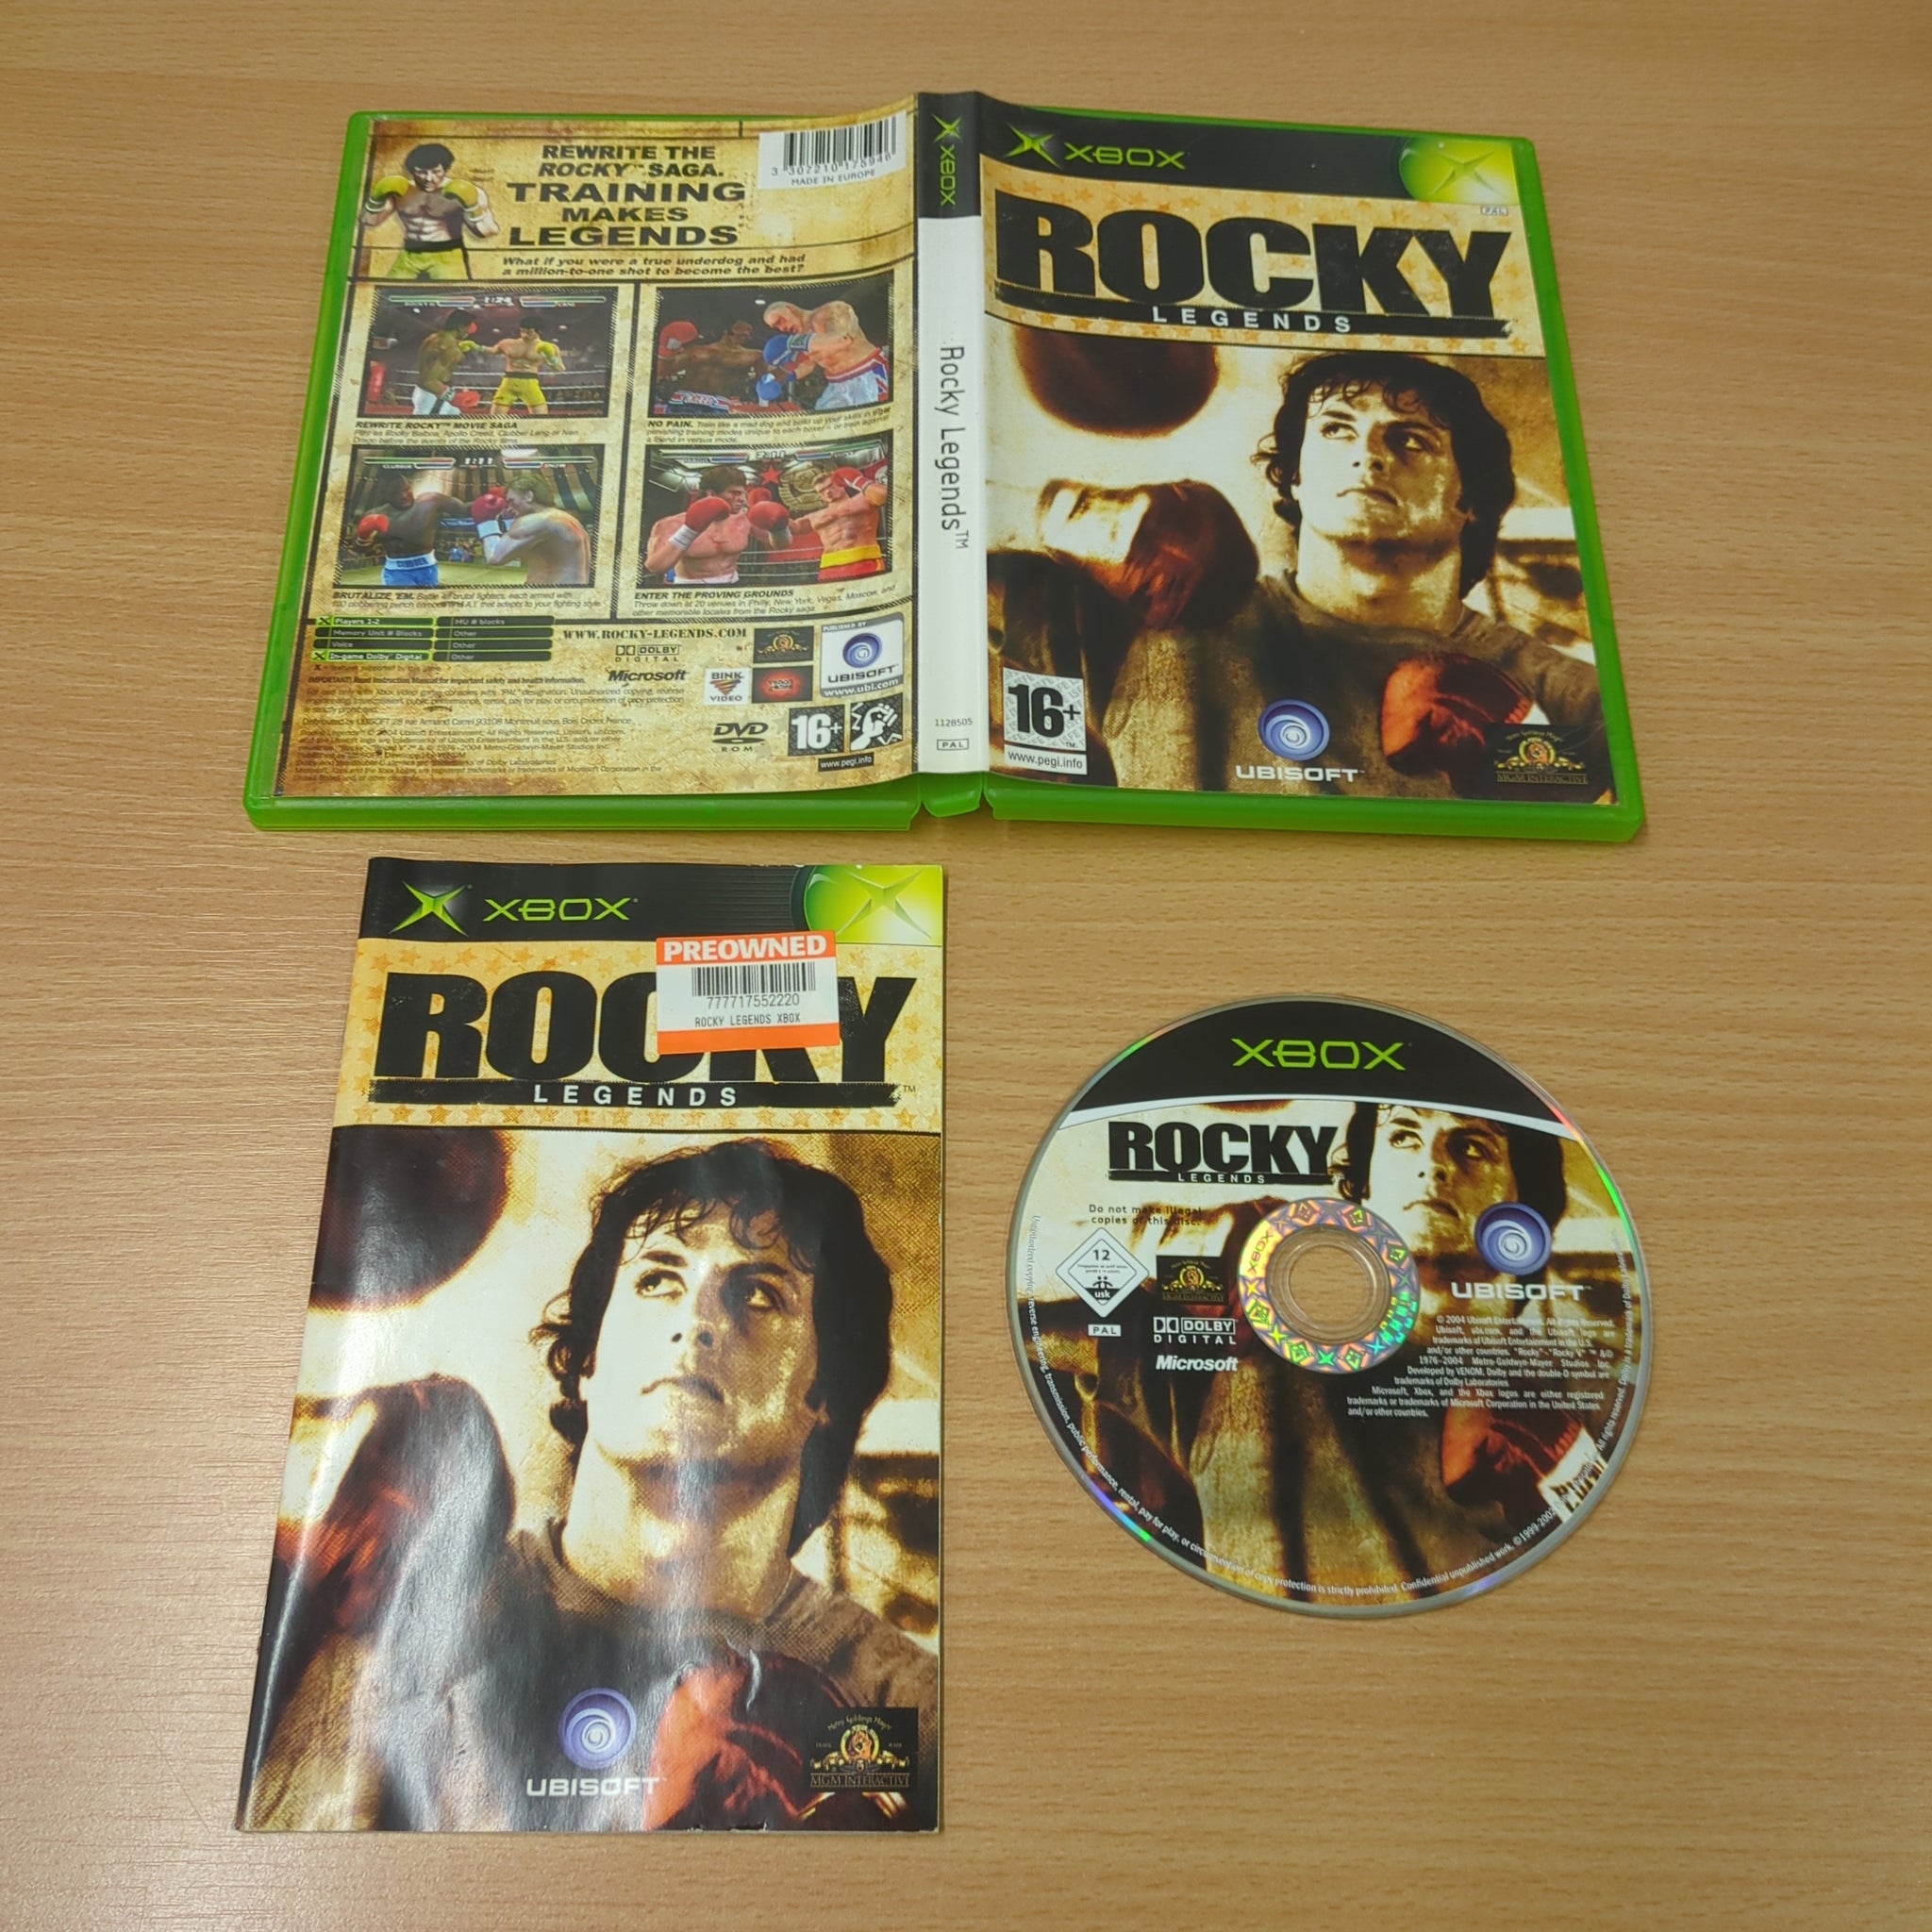 Rocky Legends original Xbox game